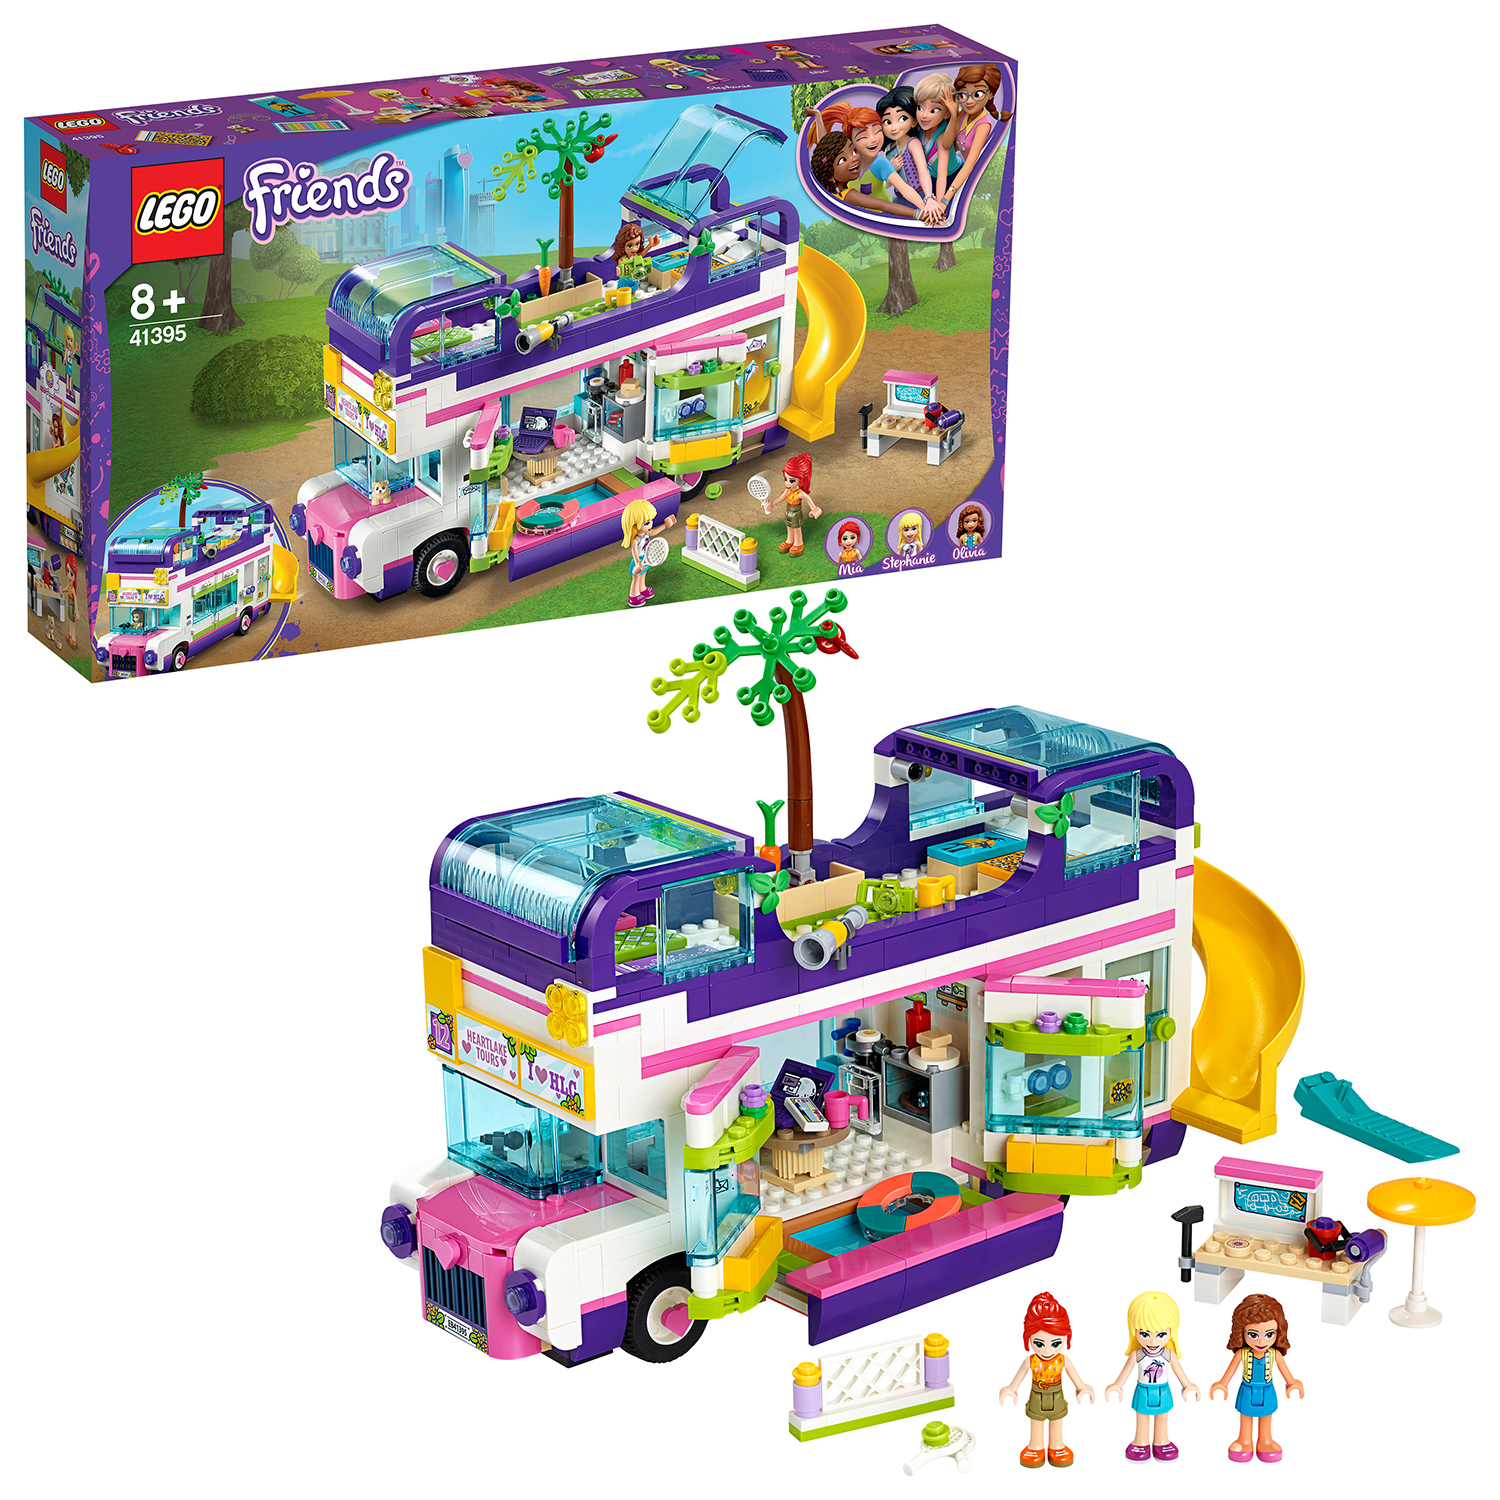 LEGO Friends Il bus dell'amicizia [41395]